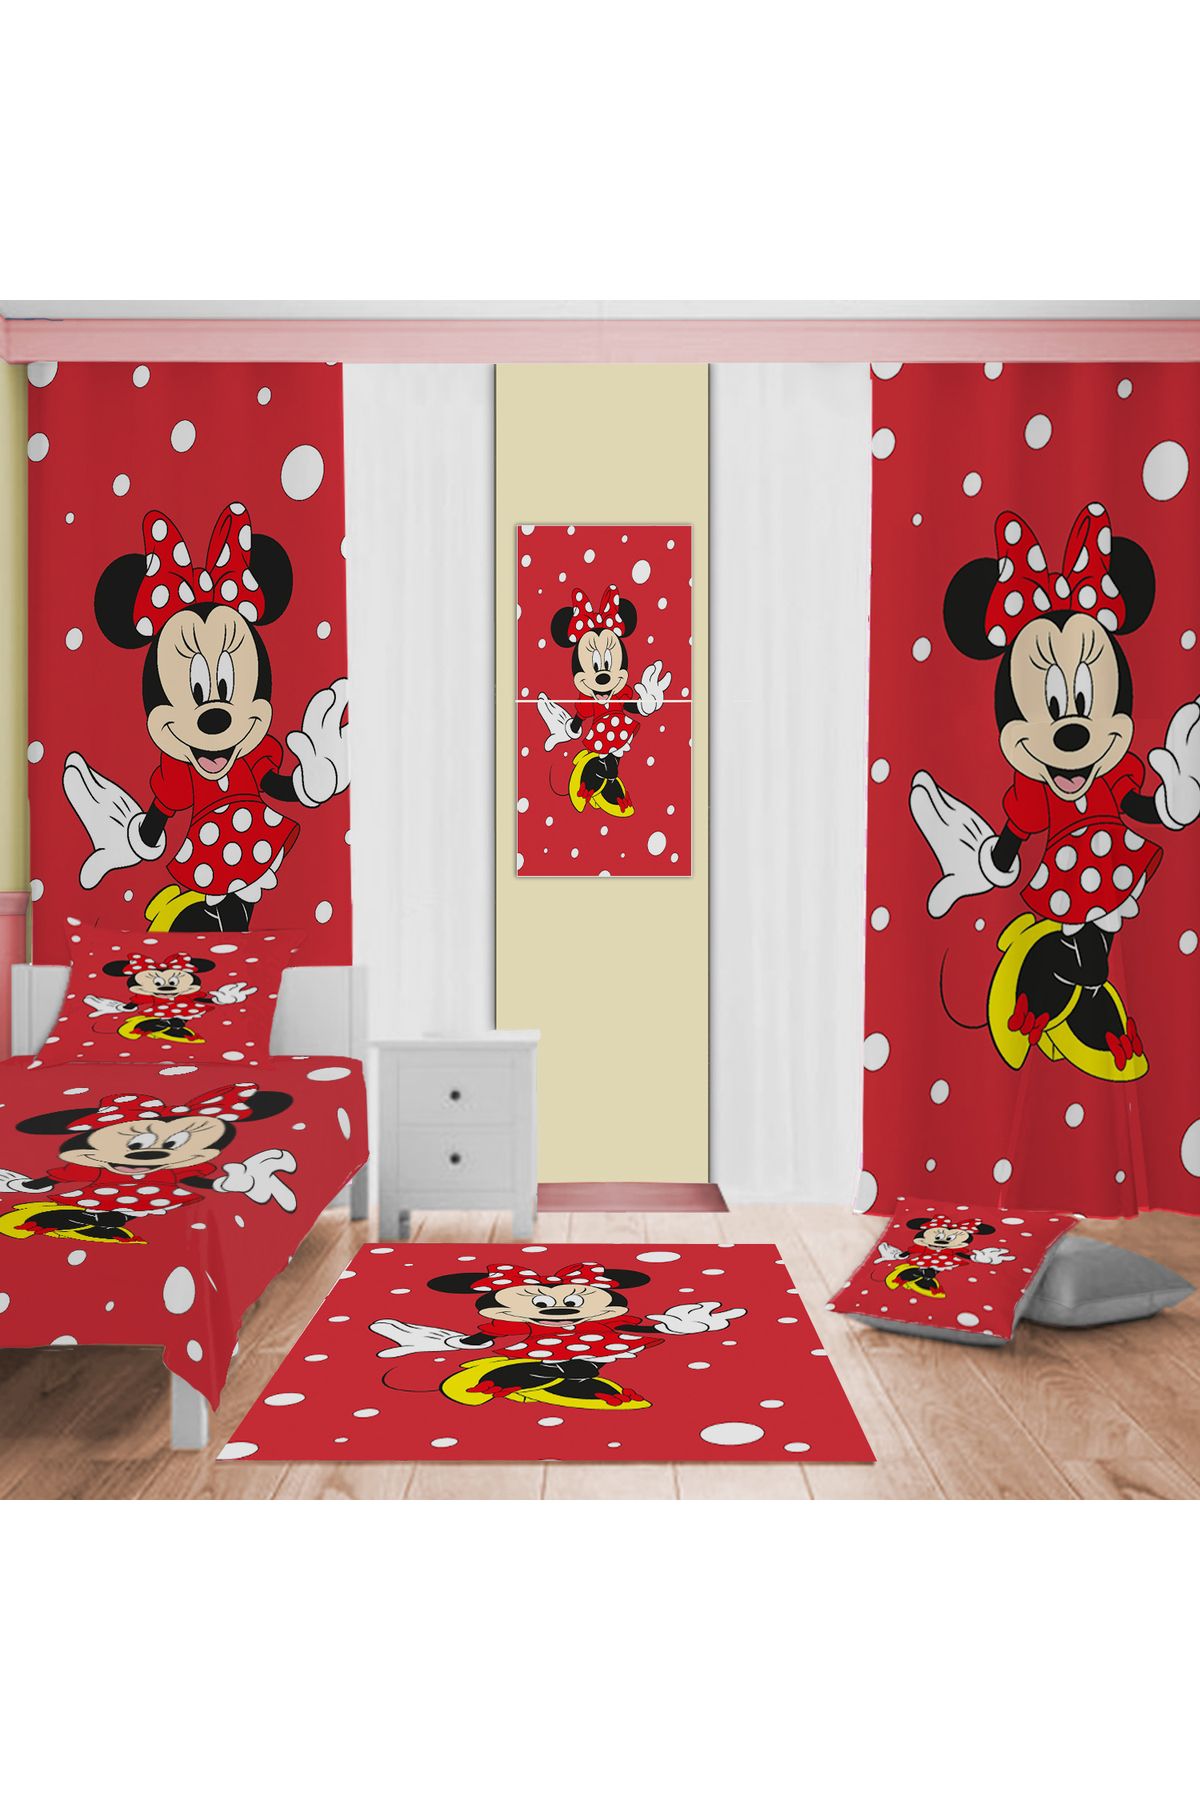 Evan Home Mickey Mouse Desenli Çocuk Odası Takım Perde (iki Kanat),Yatak Örtüsü,Yastık,Kırlent ,Halı,Tablo